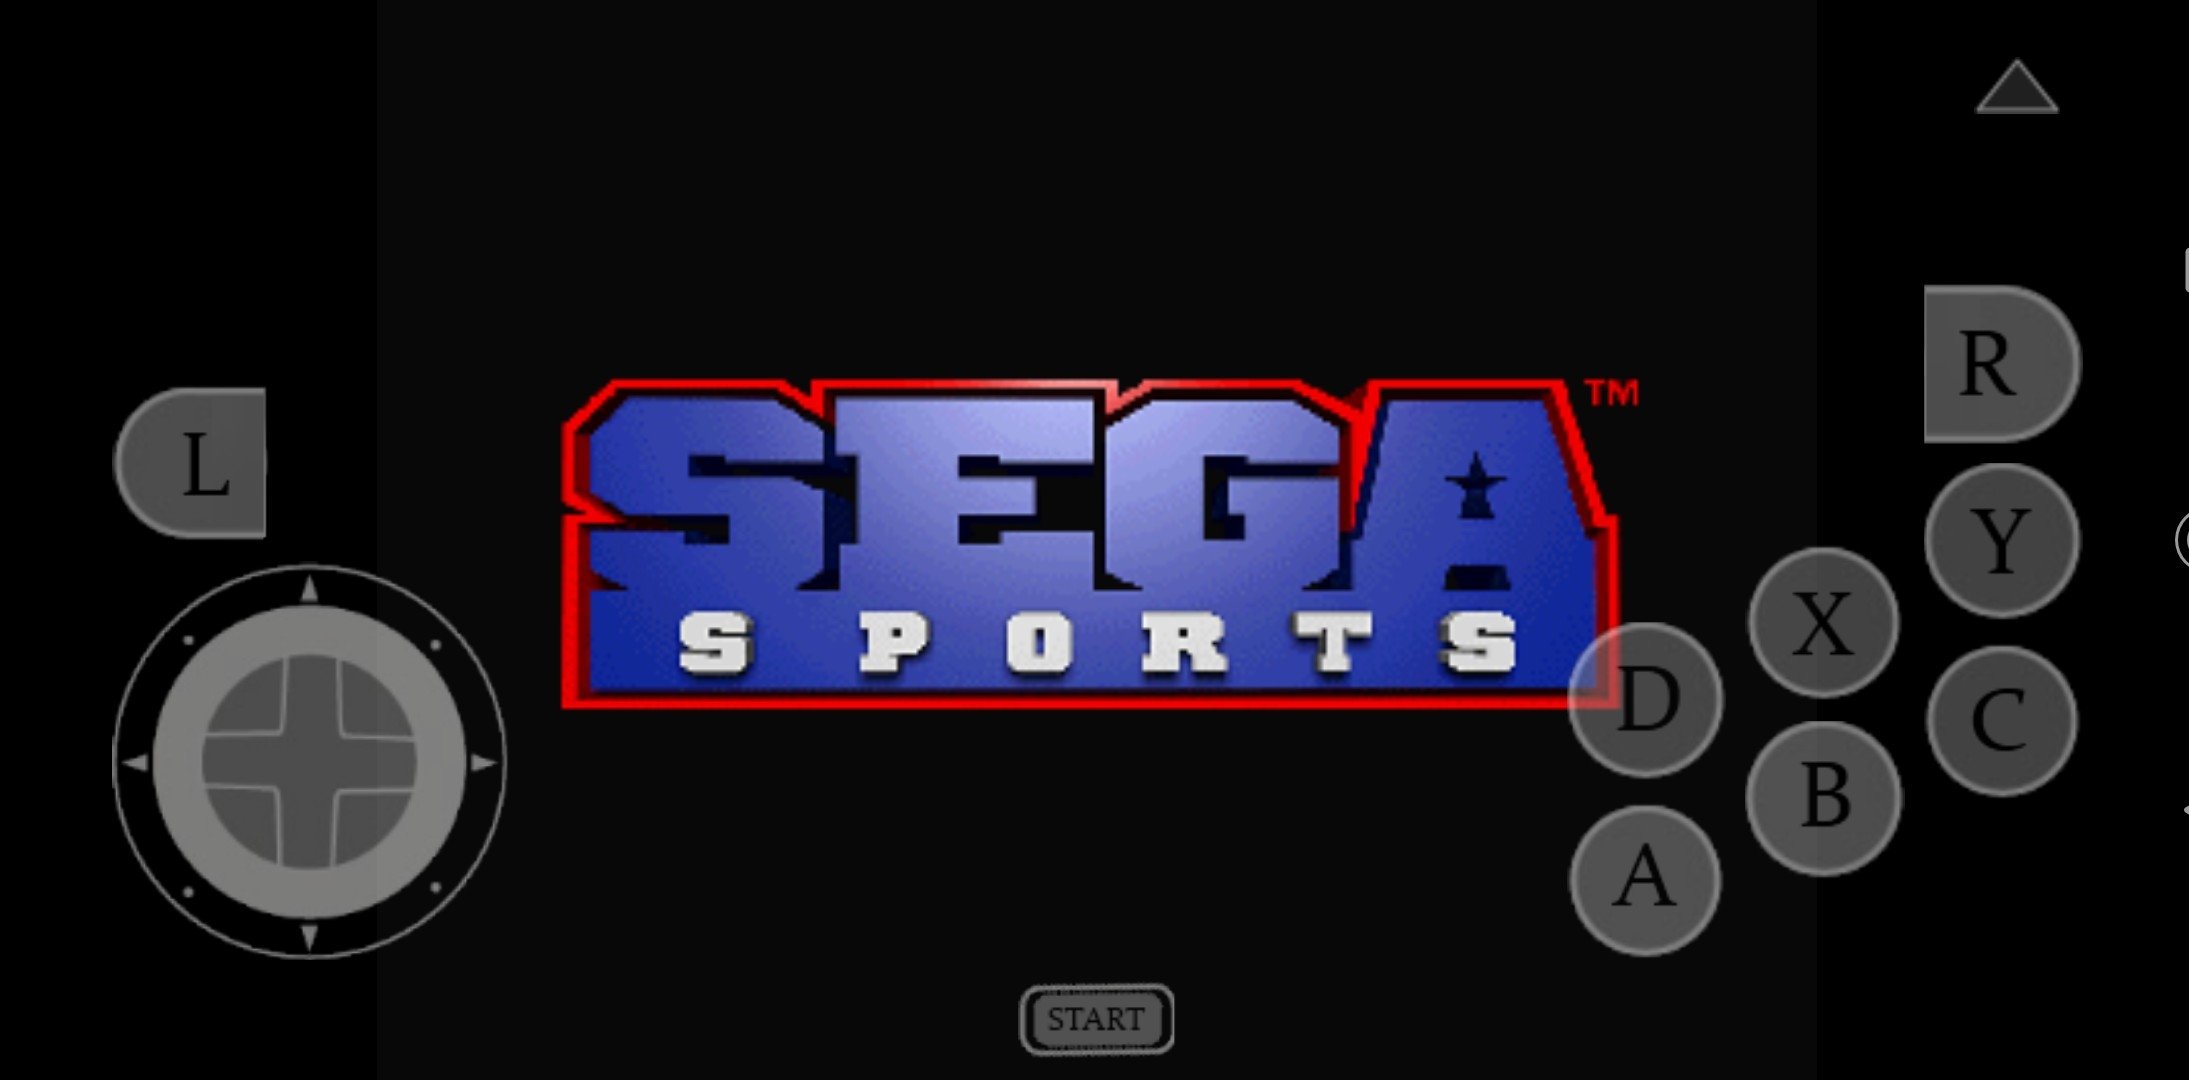 Juegos De Sega Saturn Emulador Online : EMULADOR DE SEGA (GENESIS, MEGADRIVE, SATURN) + 300 ...